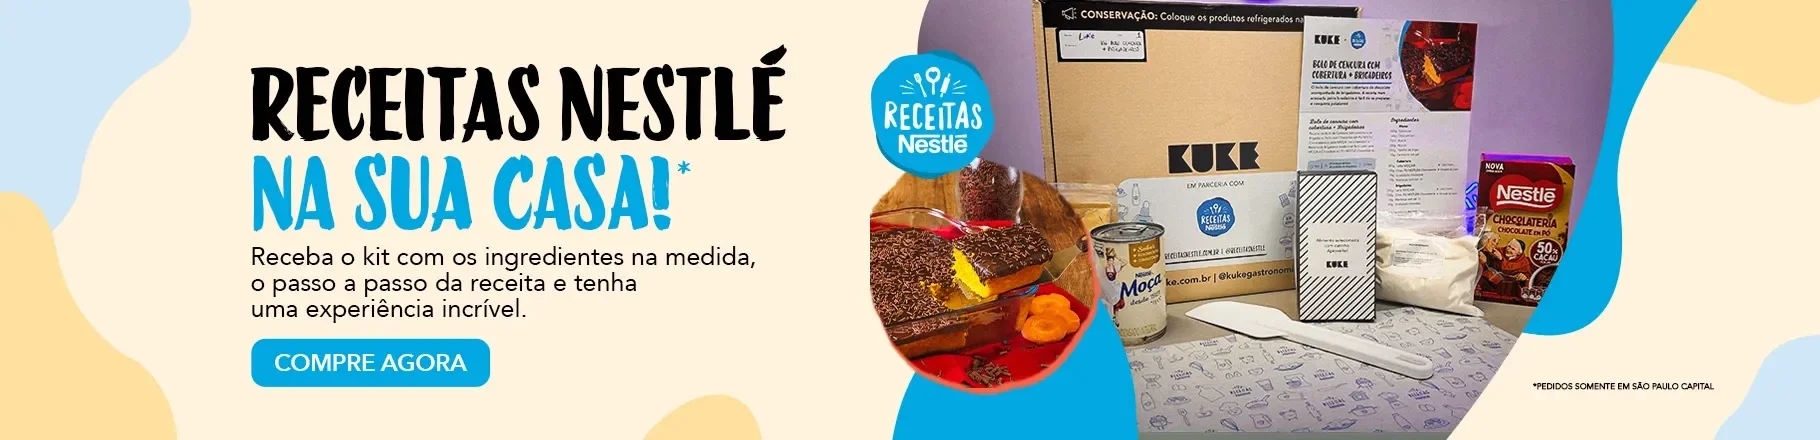 Imagem com fundo azul e amarelo, com foto de um bolo e a caixa Kuke e alguns produtos Nestlé como Moça e Chocolate